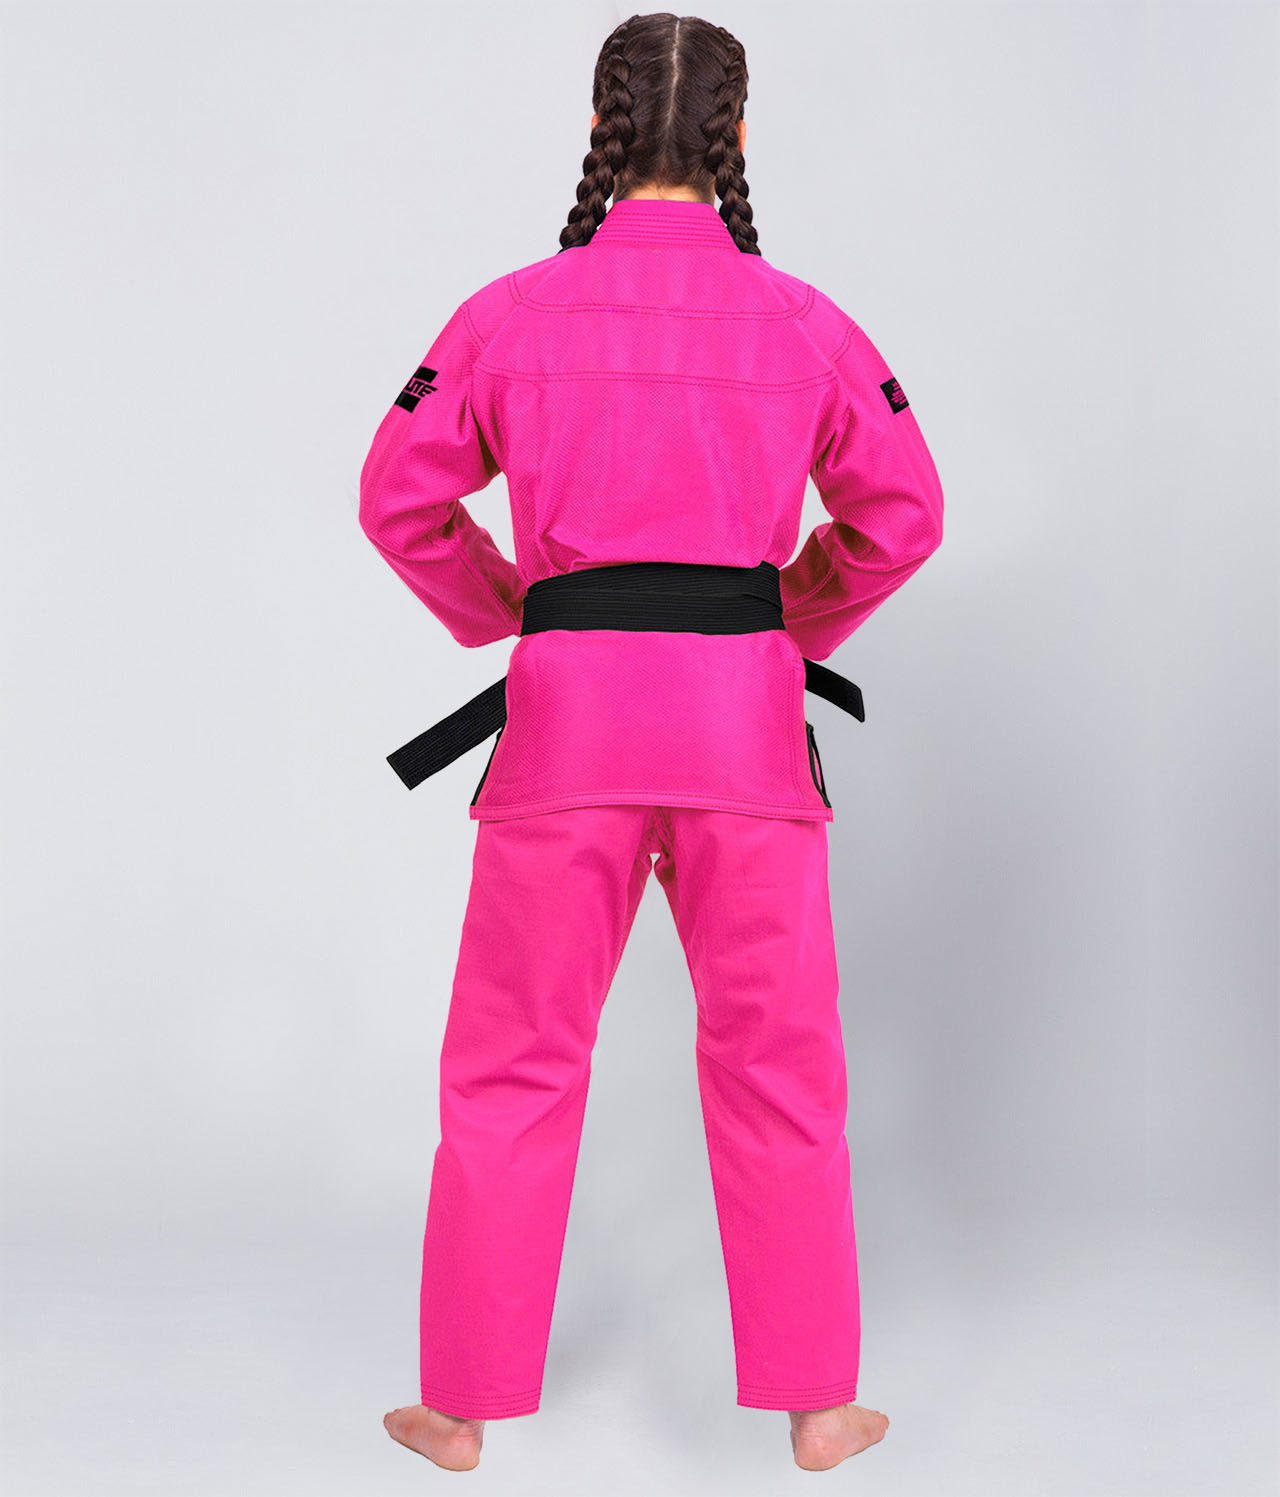 Elite Sports Women's Core Pink Brazilian Jiu Jitsu BJJ Gi Back View